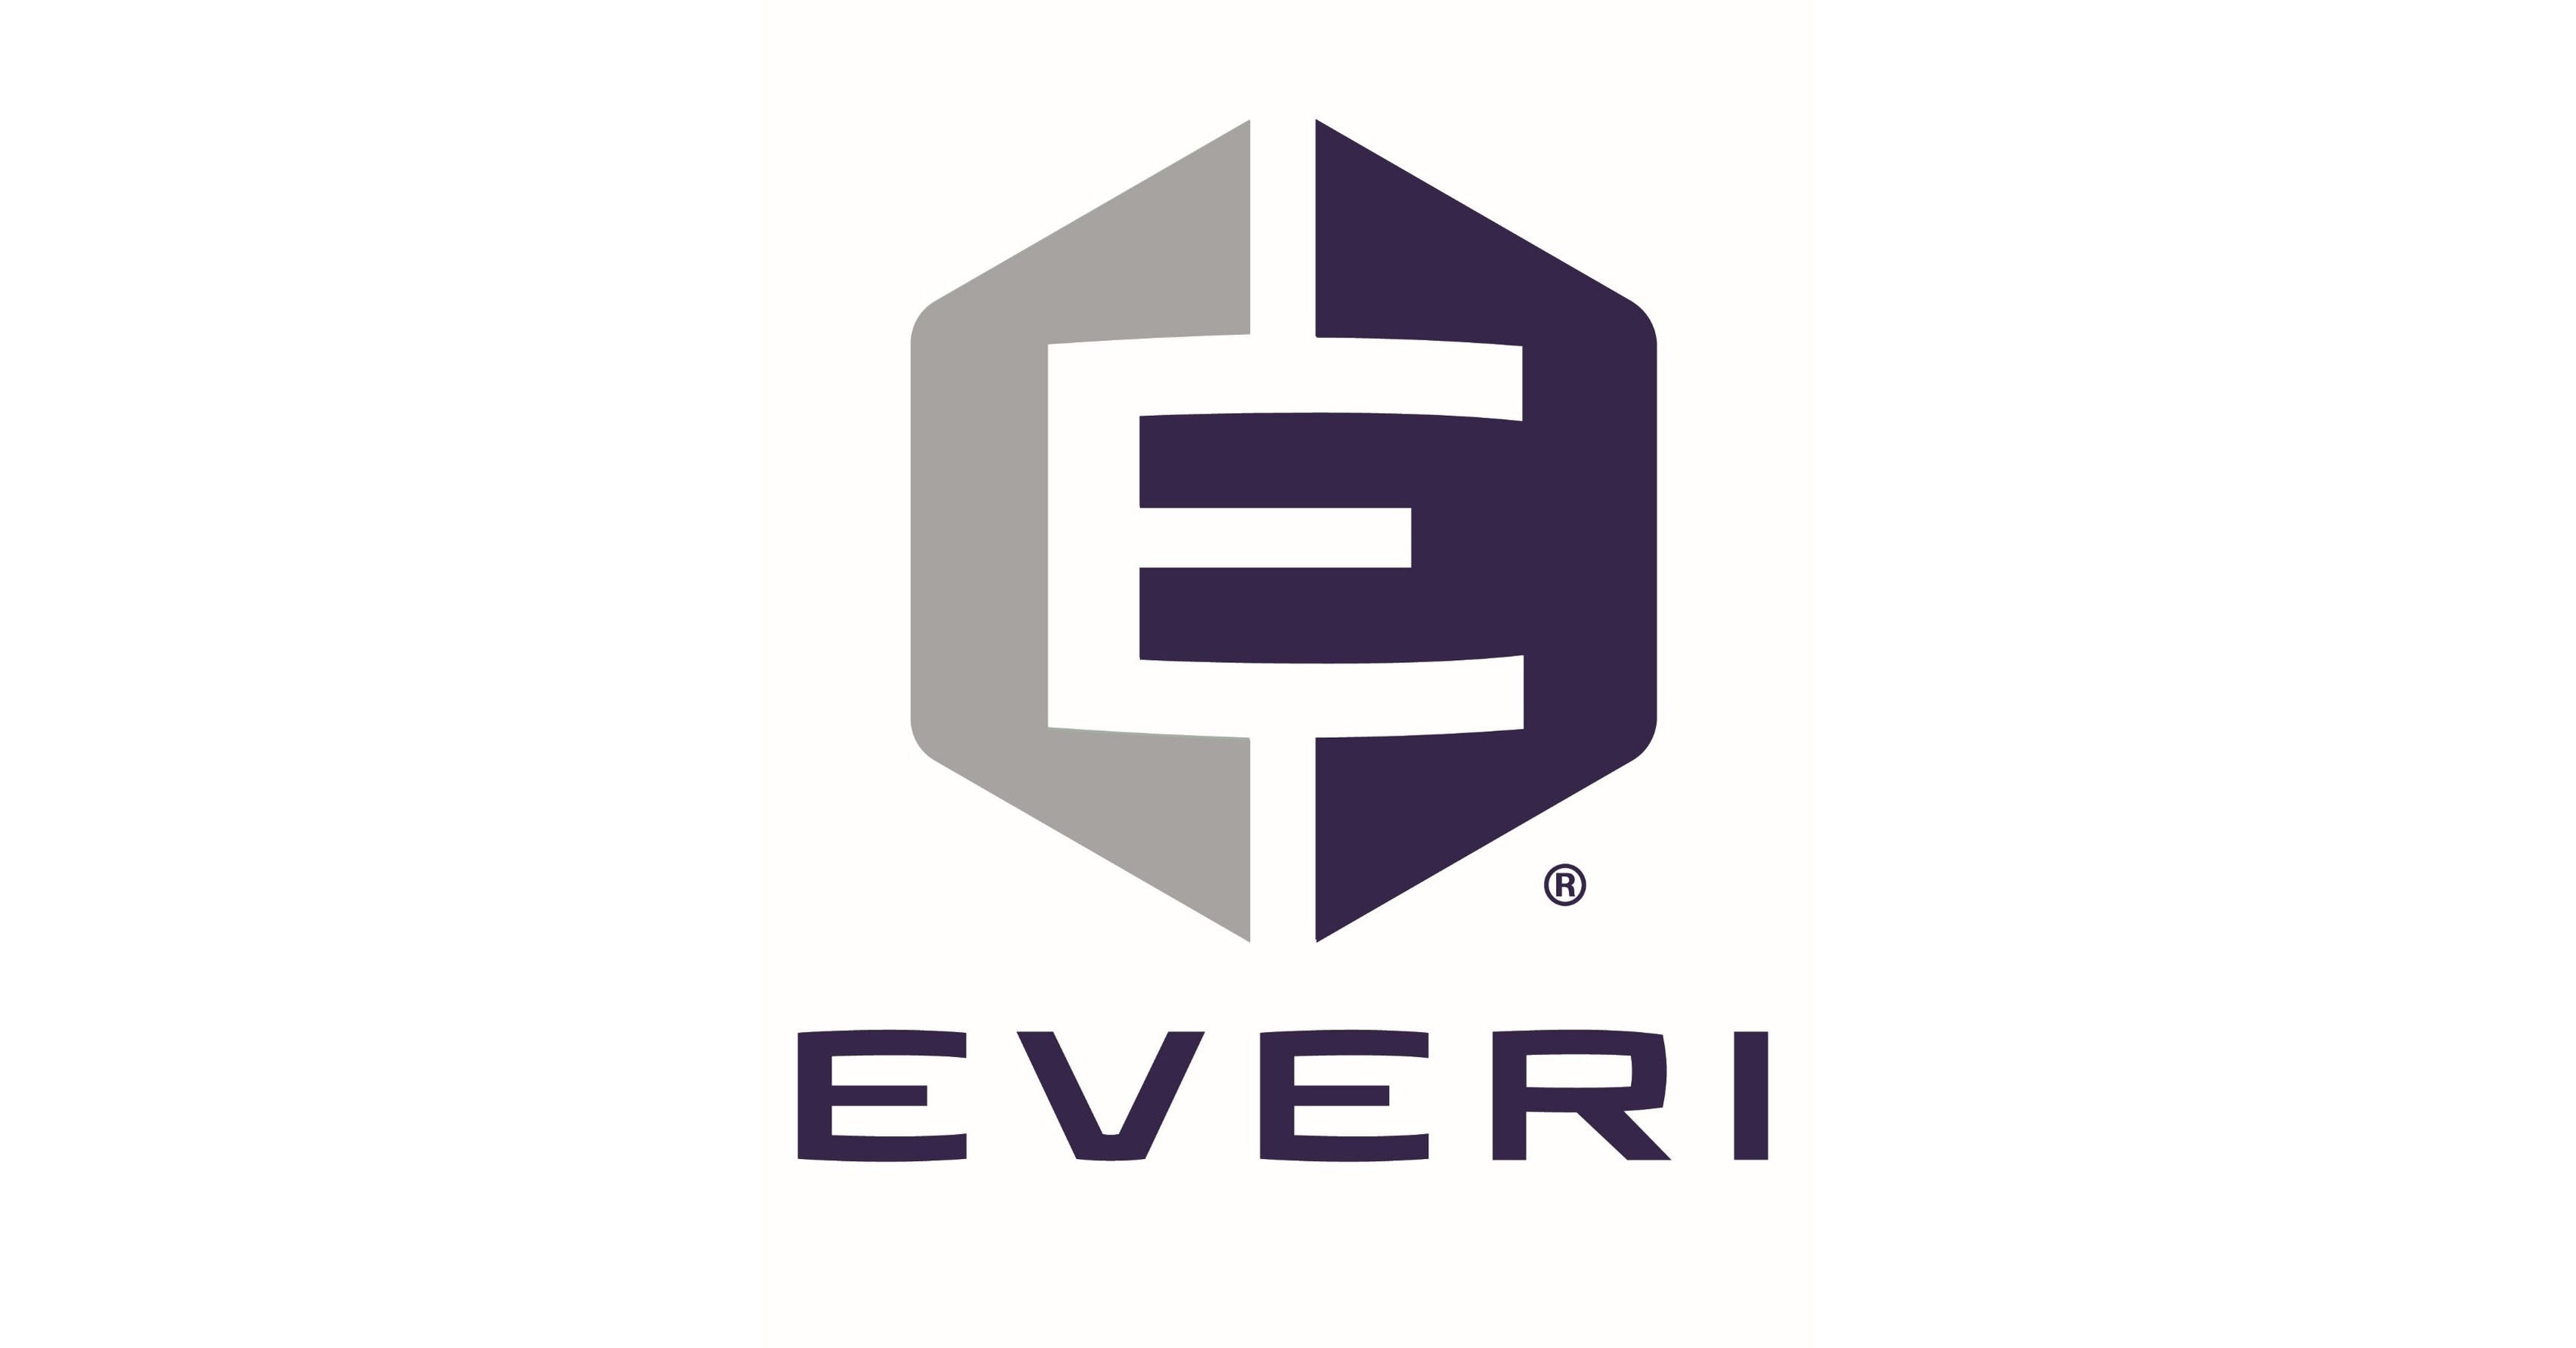 Churchill Downs Racetrack Launches New Mobile Experiences via Everi’s Venuetize Platform